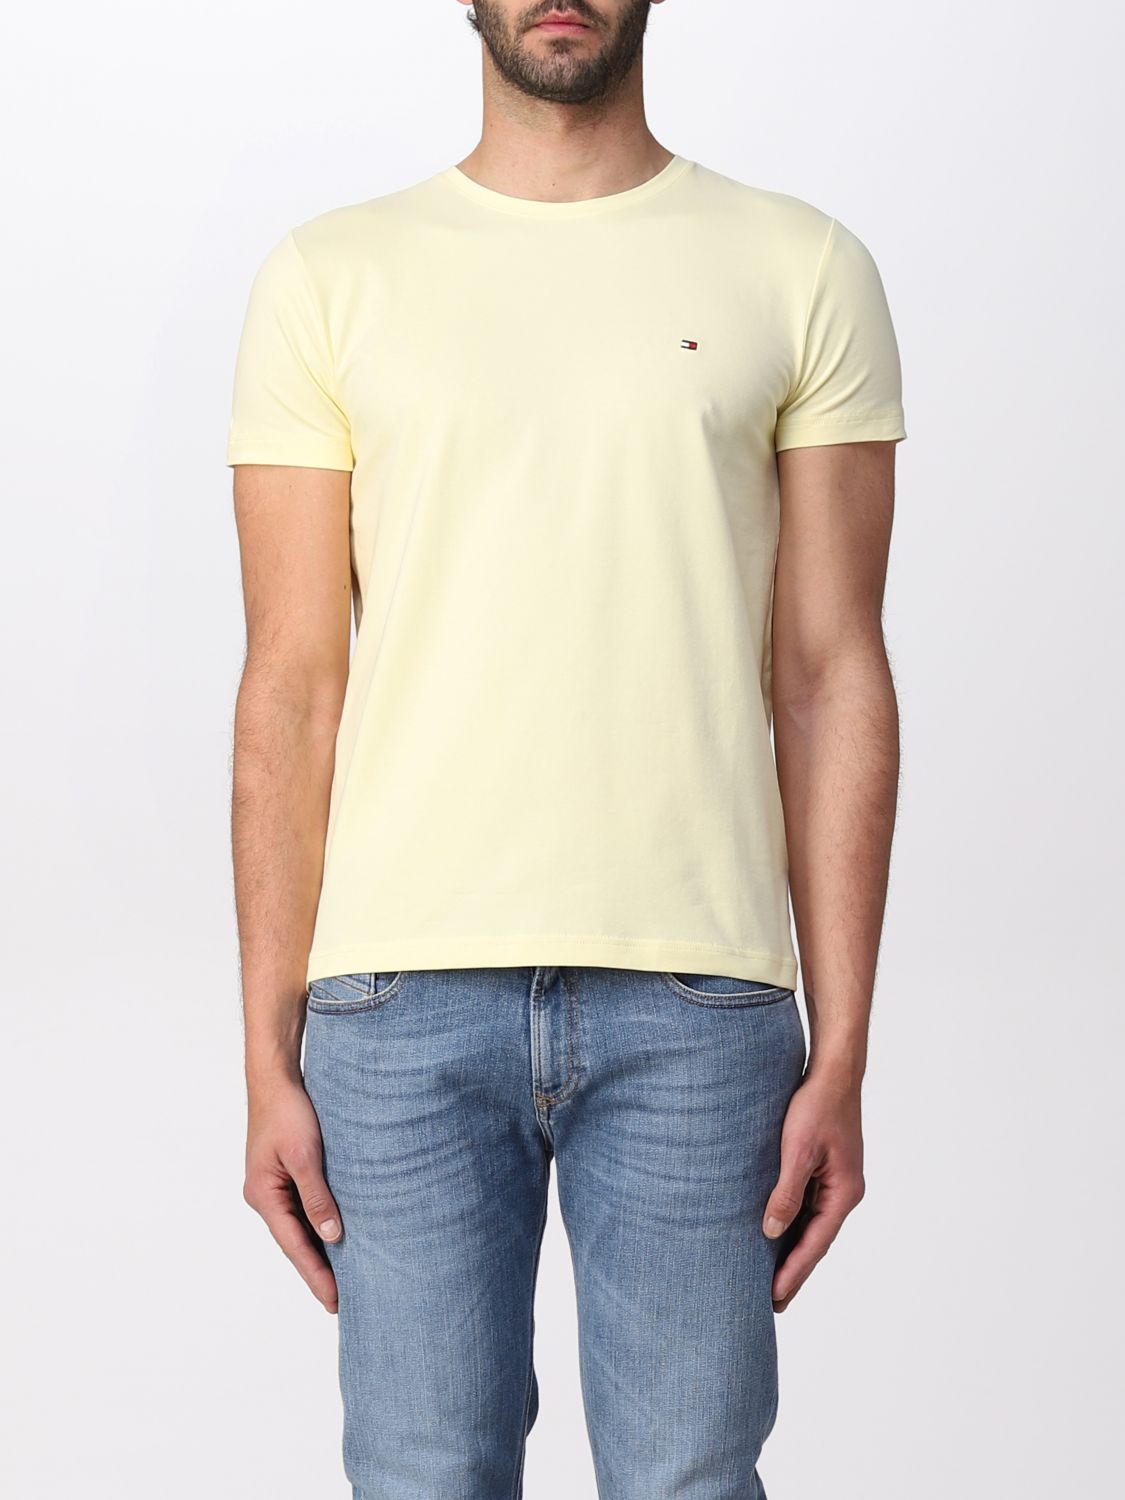 Tommy Hilfiger Outlet: T-shirt men - Lemon Tommy Hilfiger t-shirt MW0MW10800 online at GIGLIO.COM